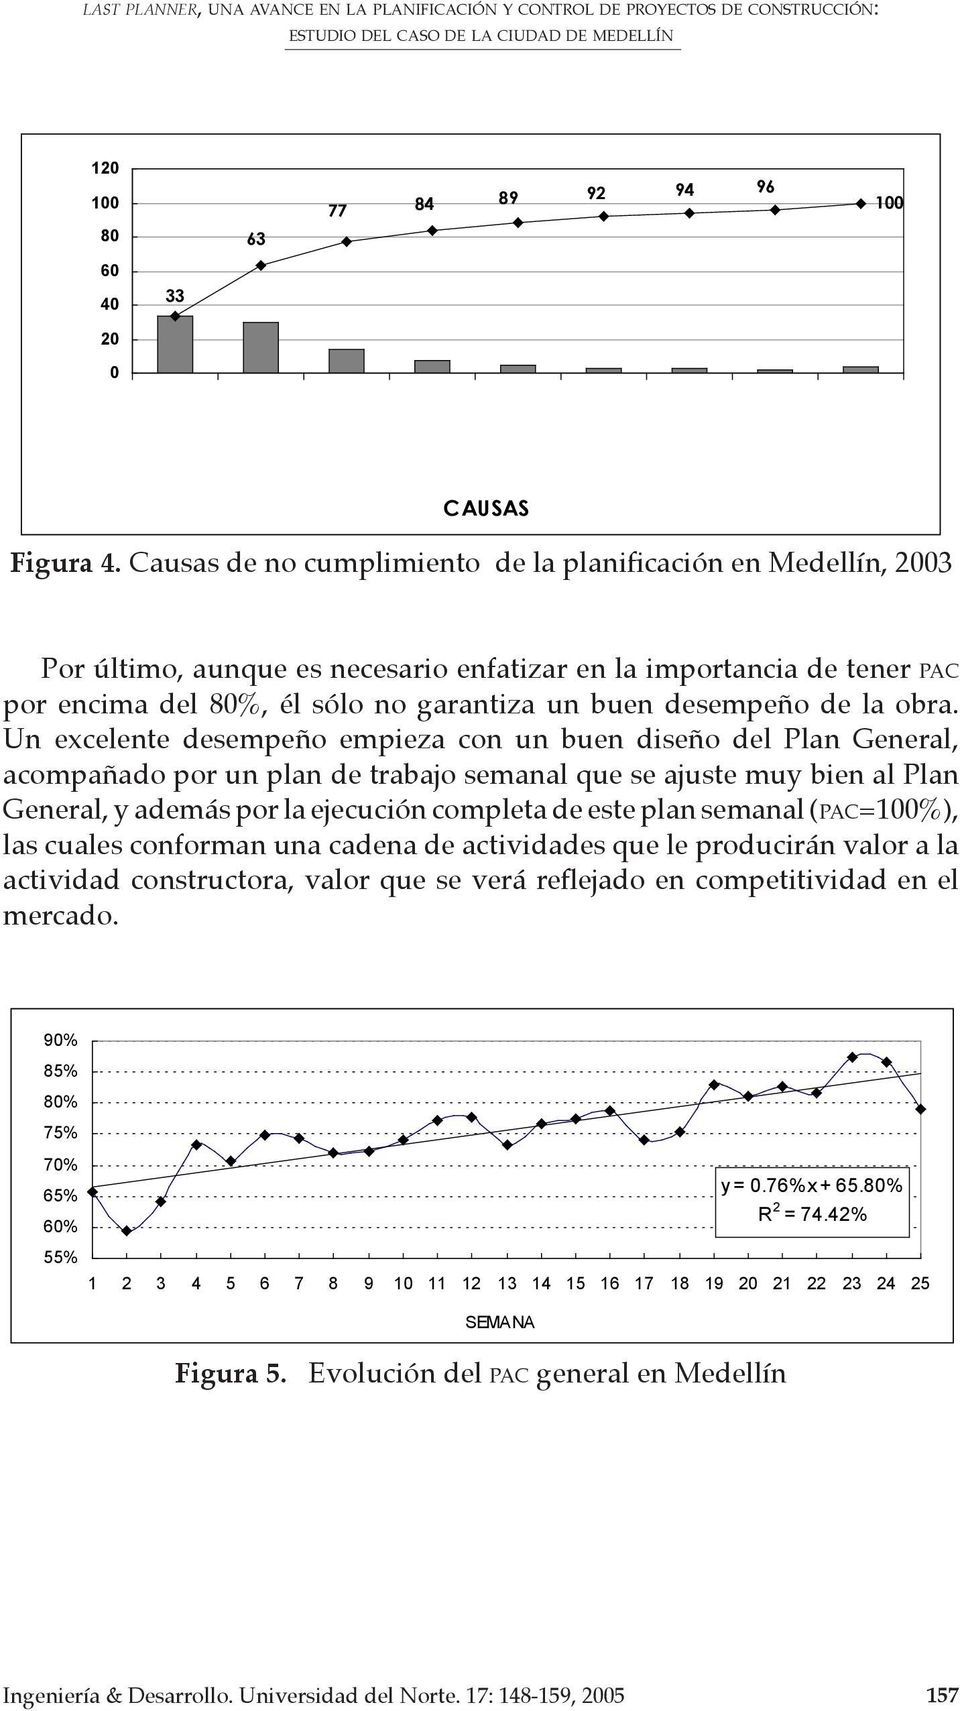 Causas de no cumplimiento de la planificación en Medellín, 2003 Por último, aunque es necesario enfatizar en la importancia de tener PAC por encima del 80%, él sólo no garantiza un buen desempeño de